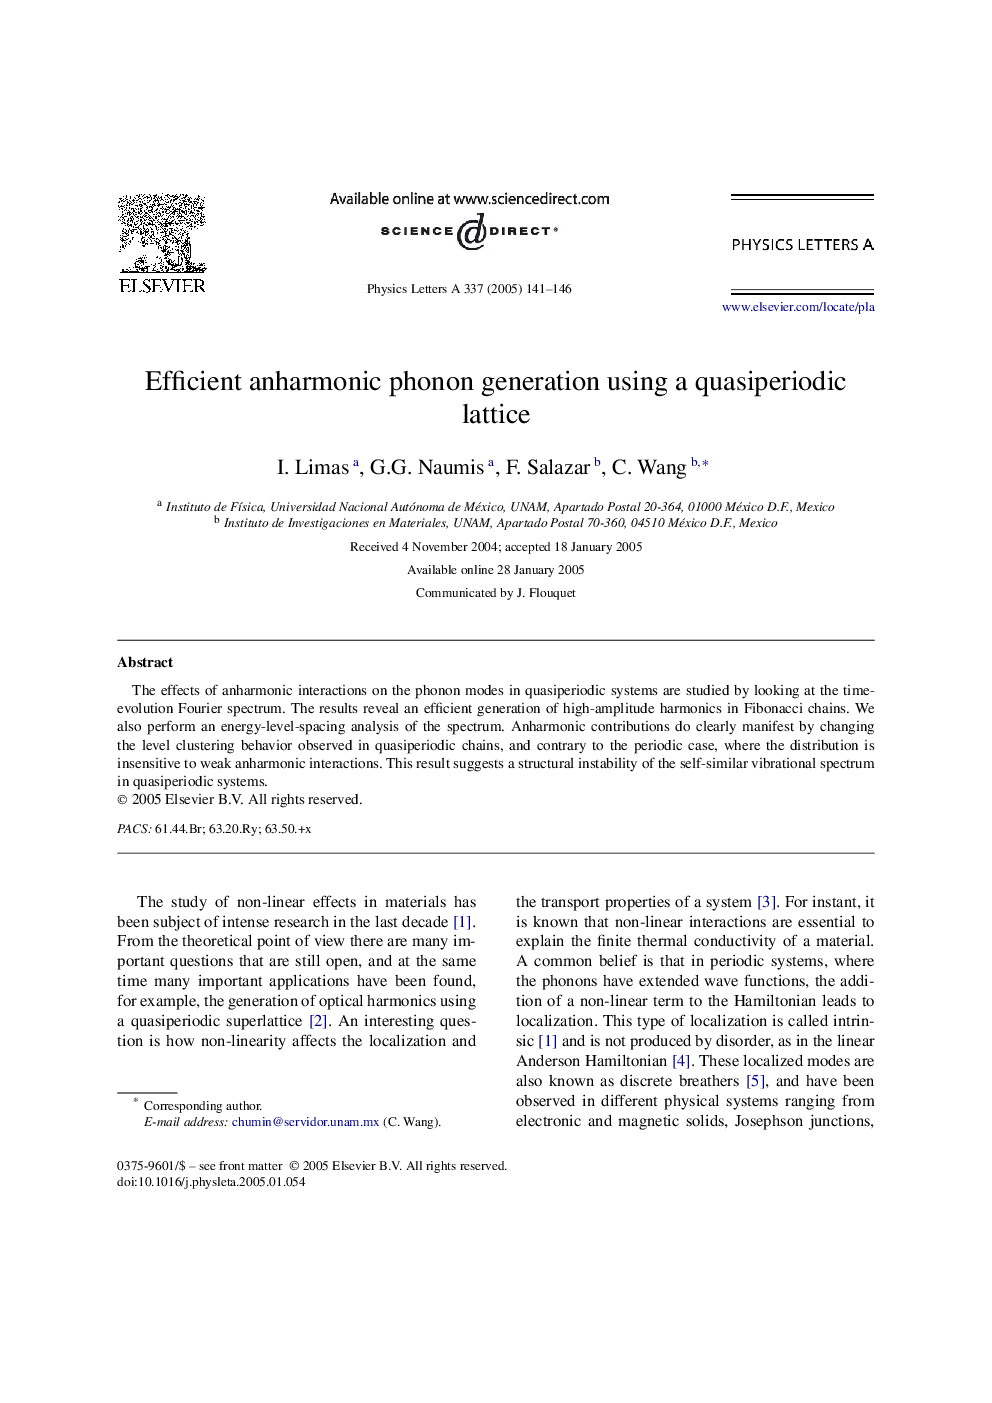 Efficient anharmonic phonon generation using a quasiperiodic lattice